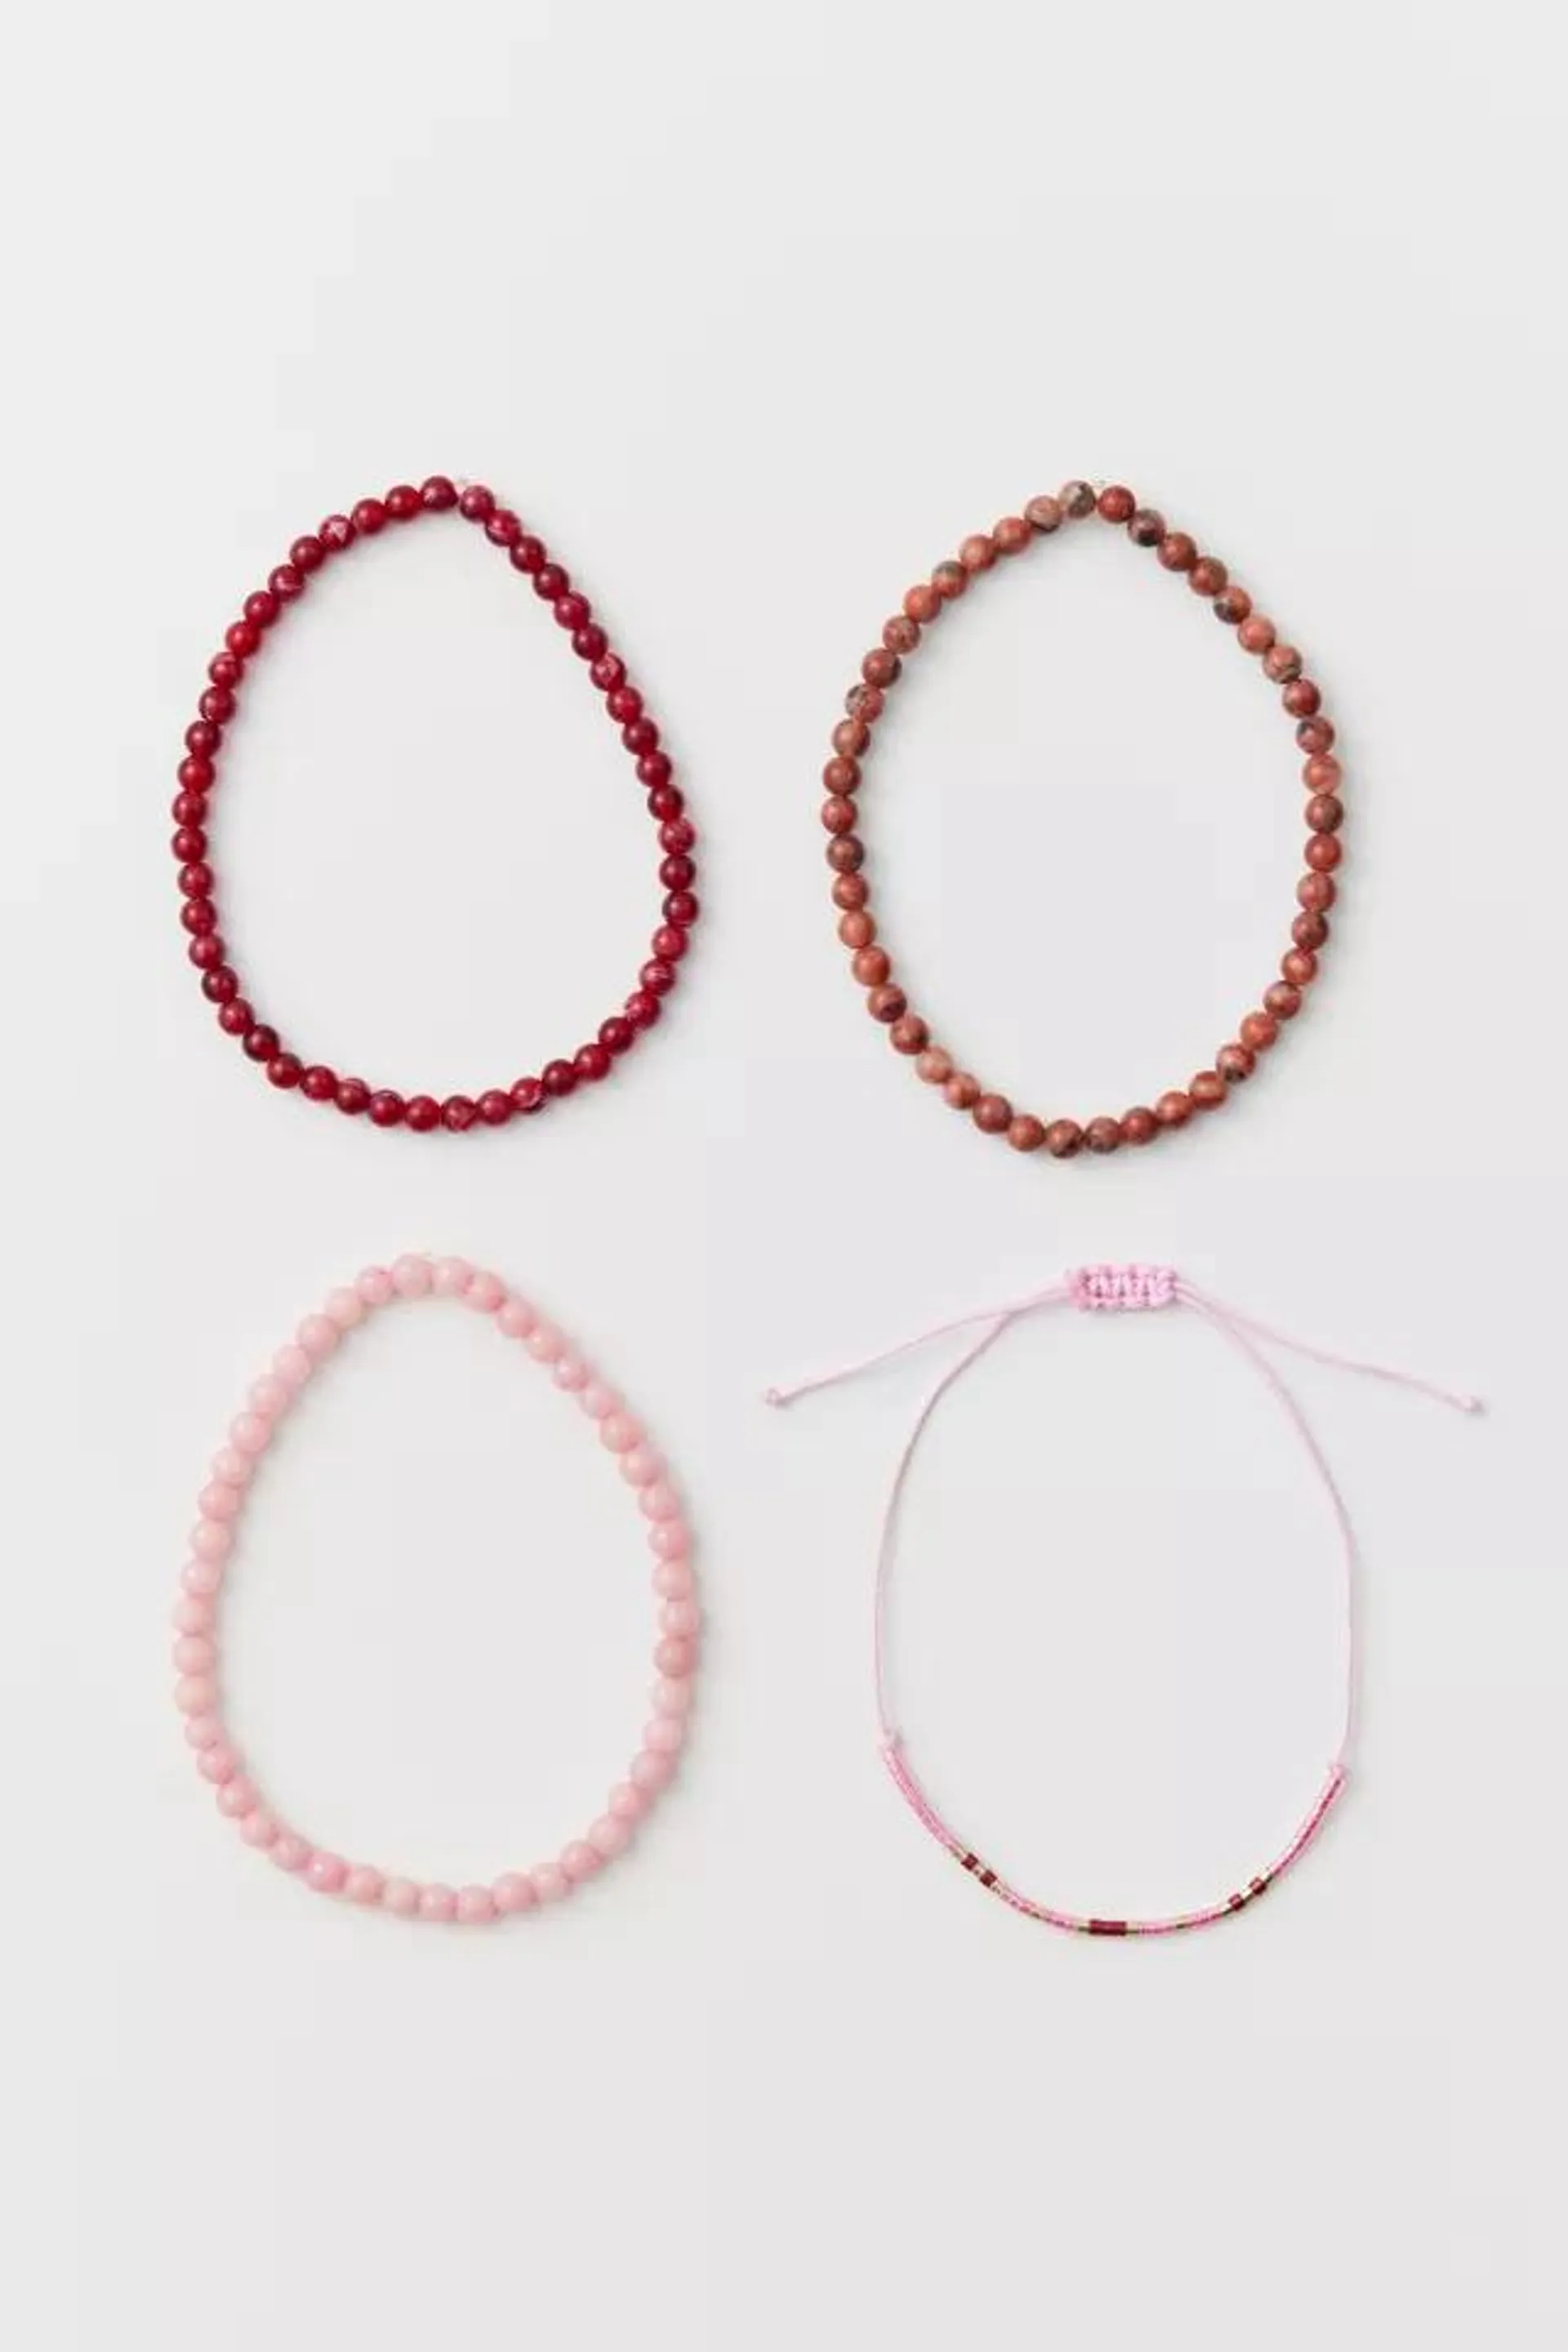 Pink & Red Beaded Bracelet Set